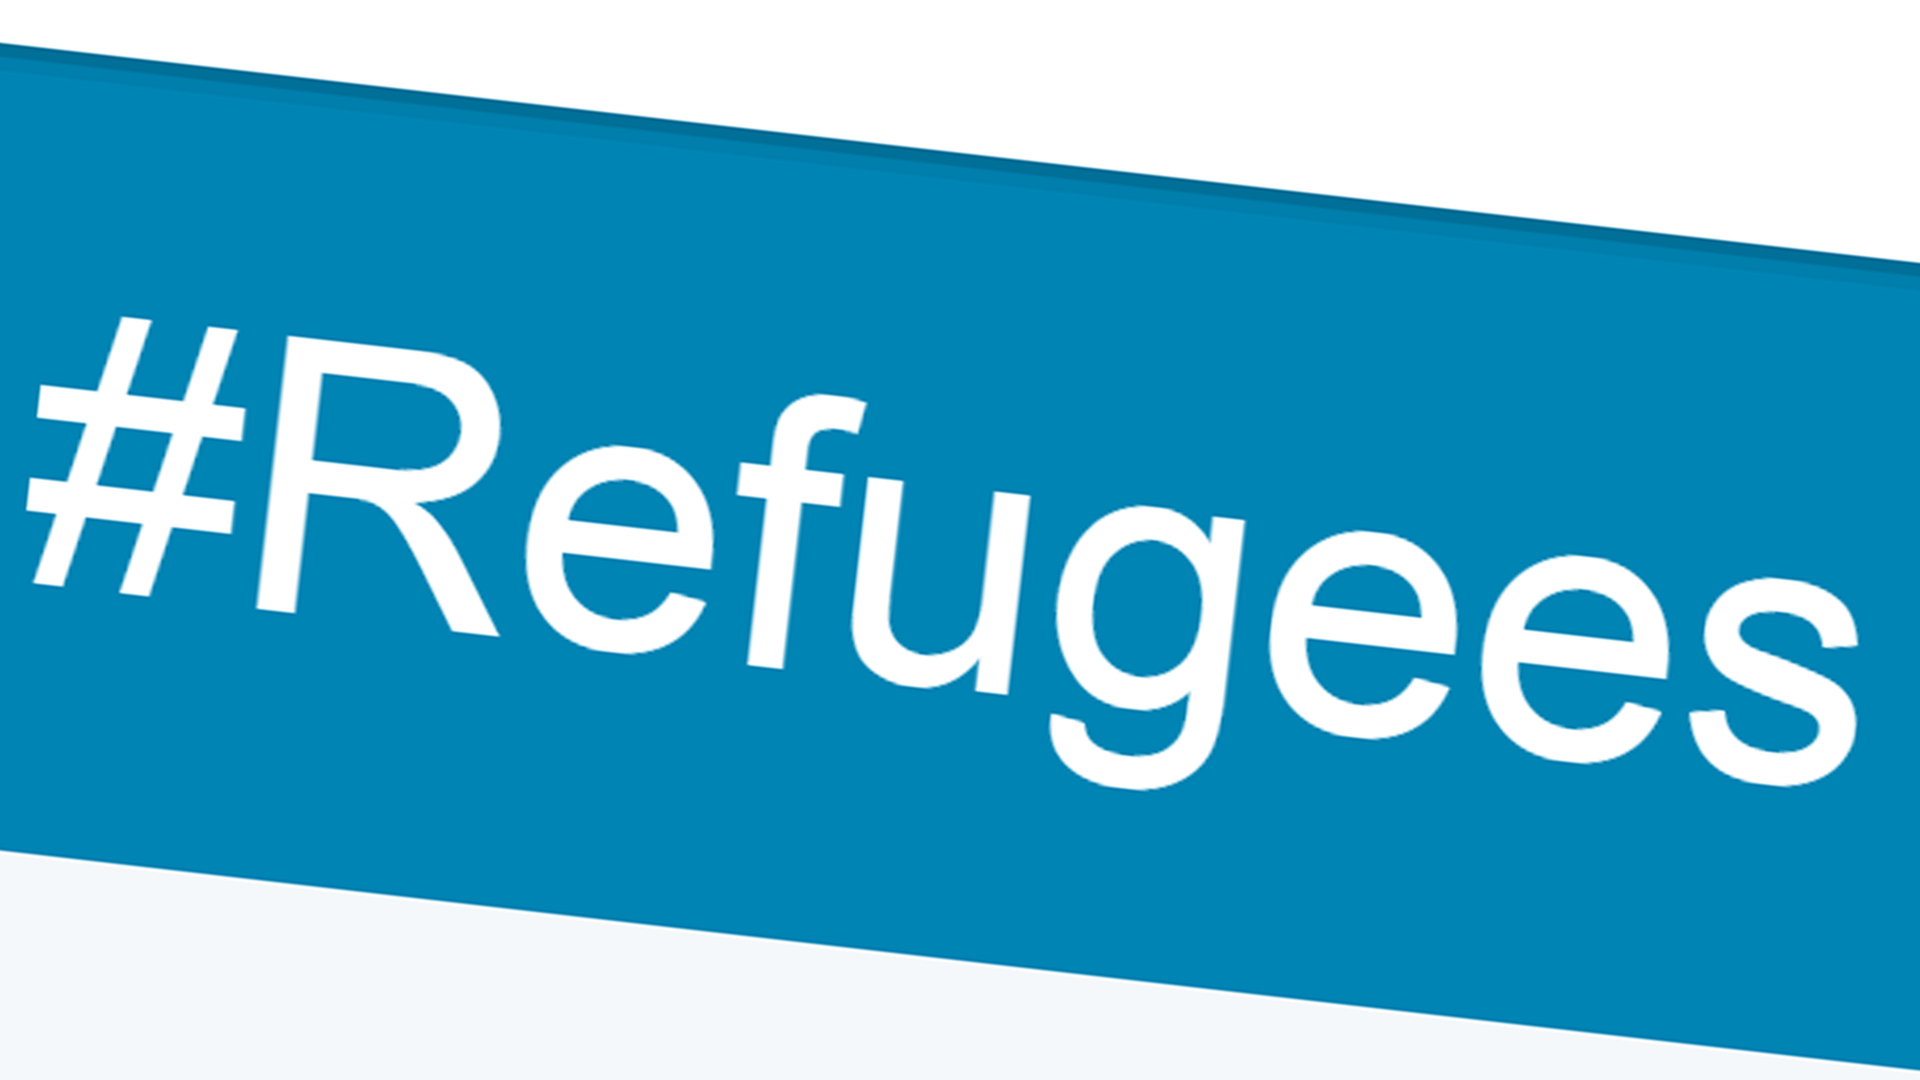 Das Wort "Refugees", zu deutsch "Flüchtlinge"